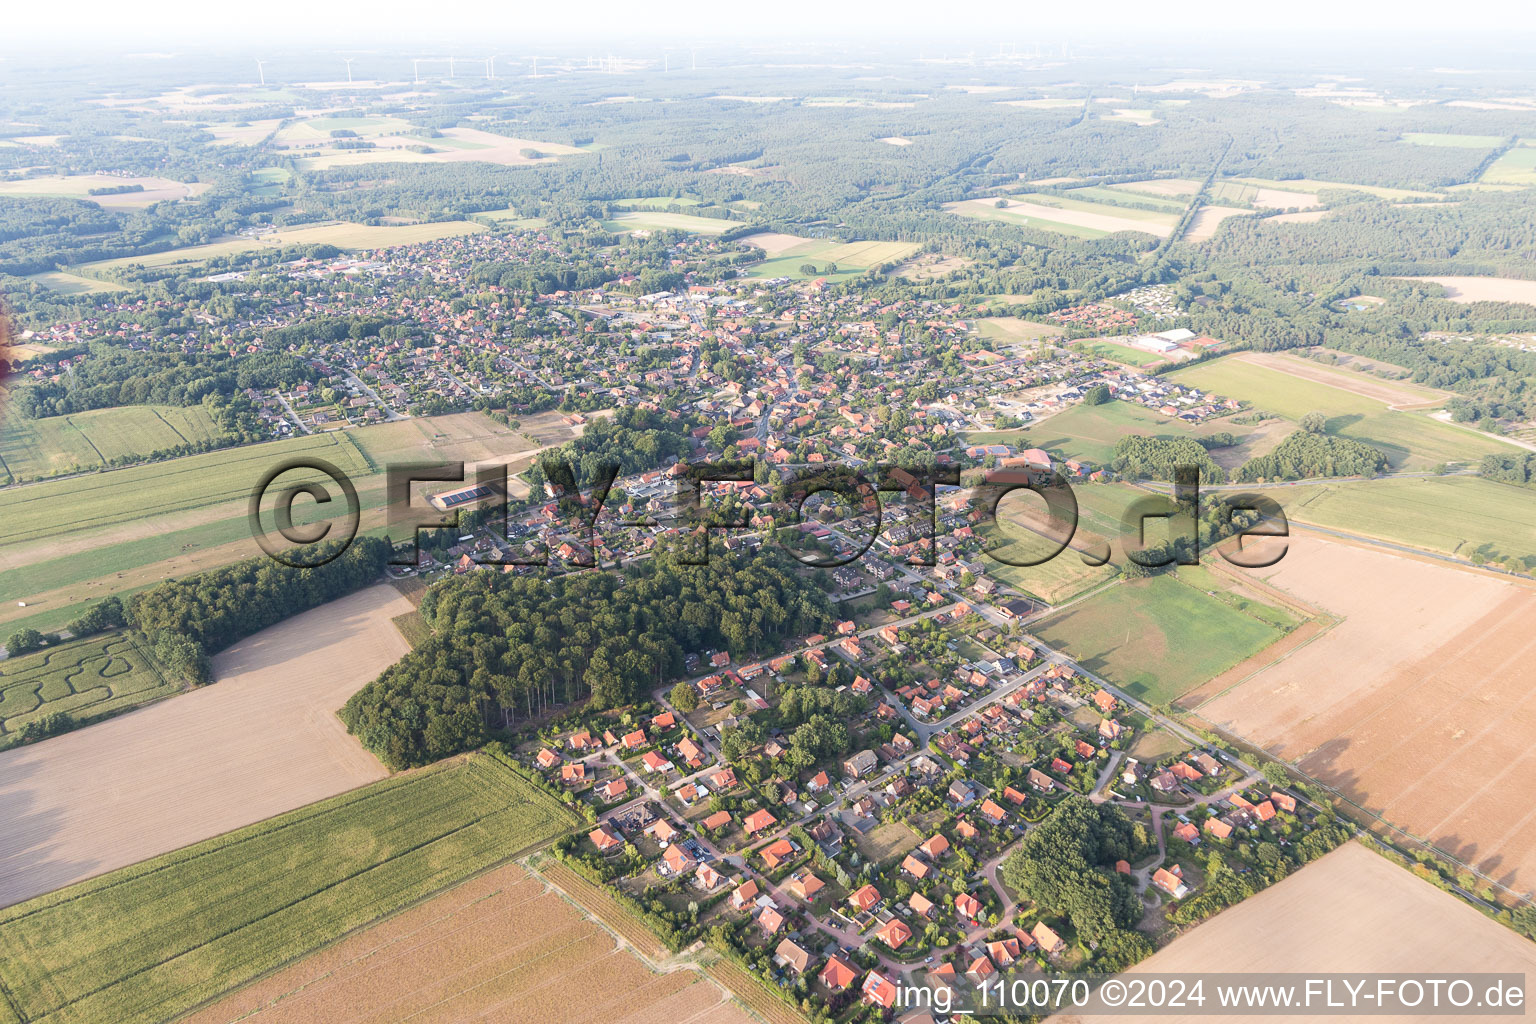 Photographie aérienne de Vue des rues et des maisons des quartiers résidentiels à Amelinghausen dans le département Basse-Saxe, Allemagne